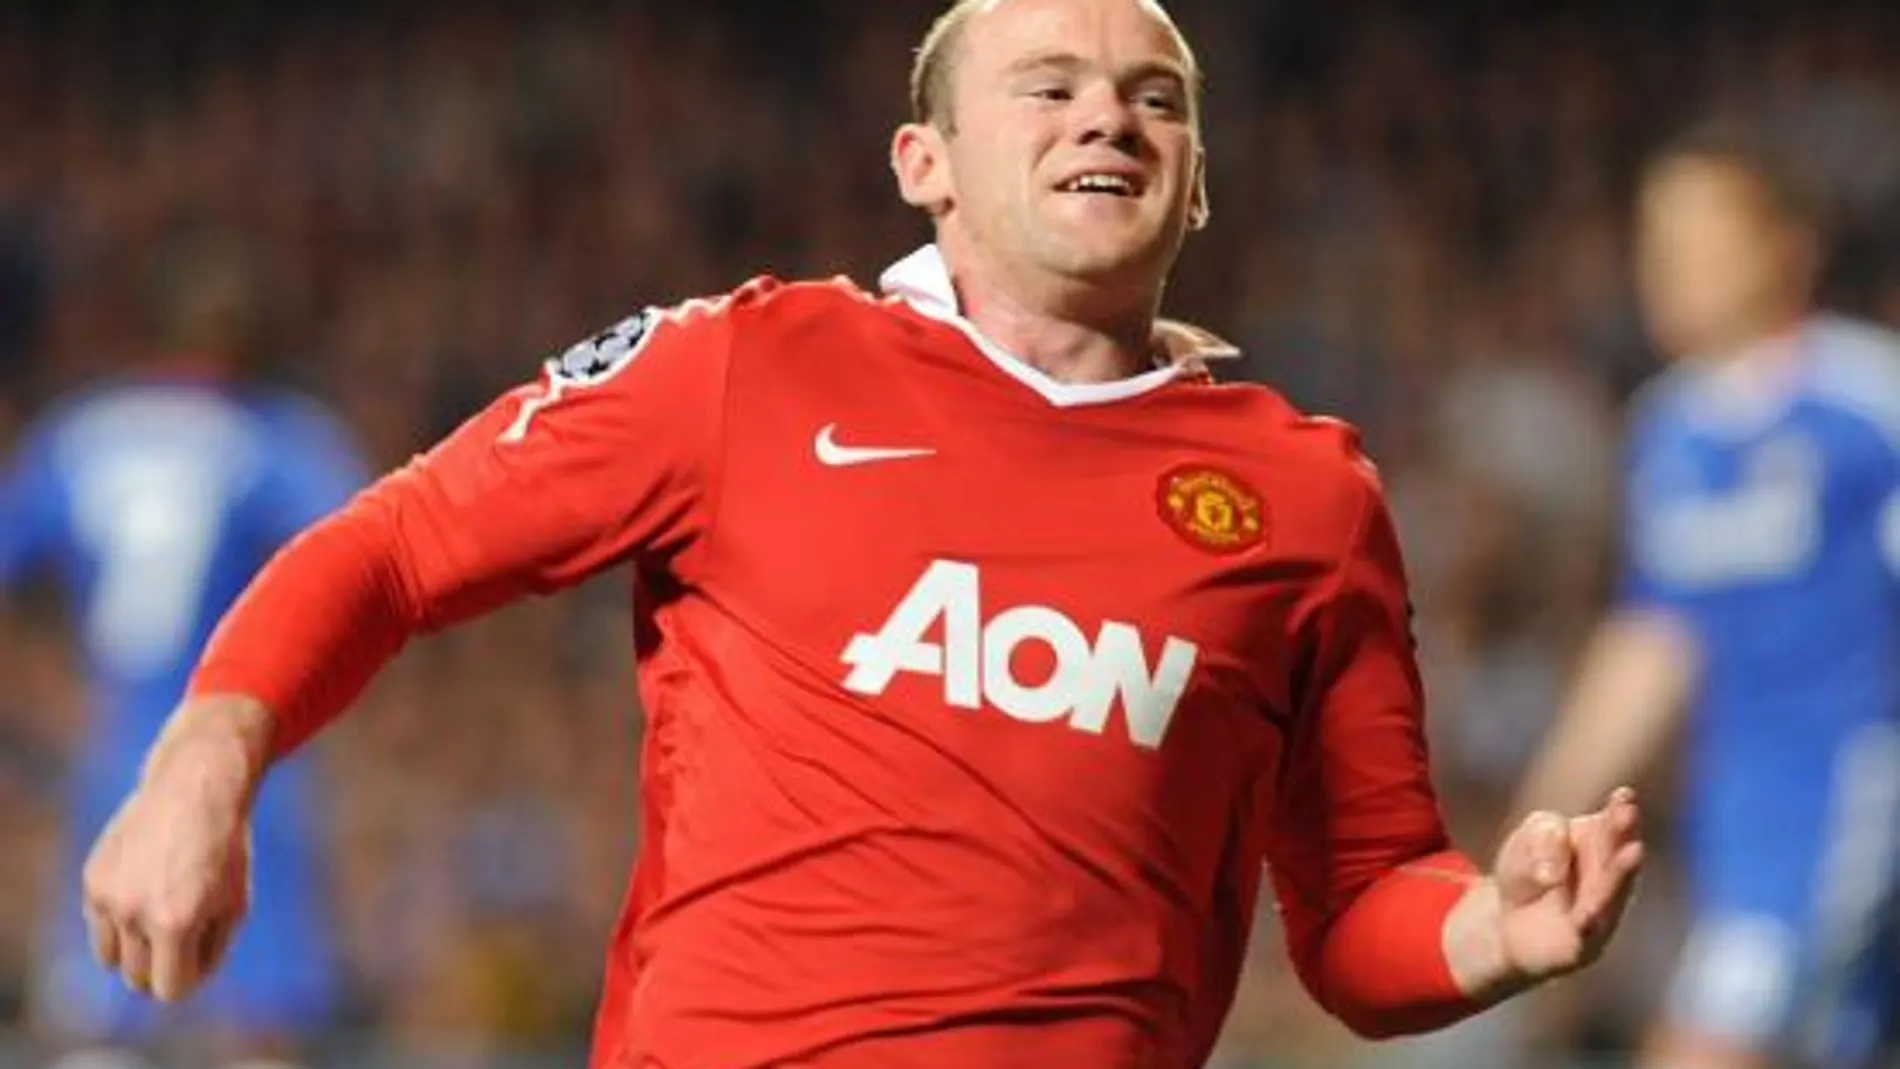 El jugador del Manchester United Wayne Rooney celebra su gol ante el Chelsea